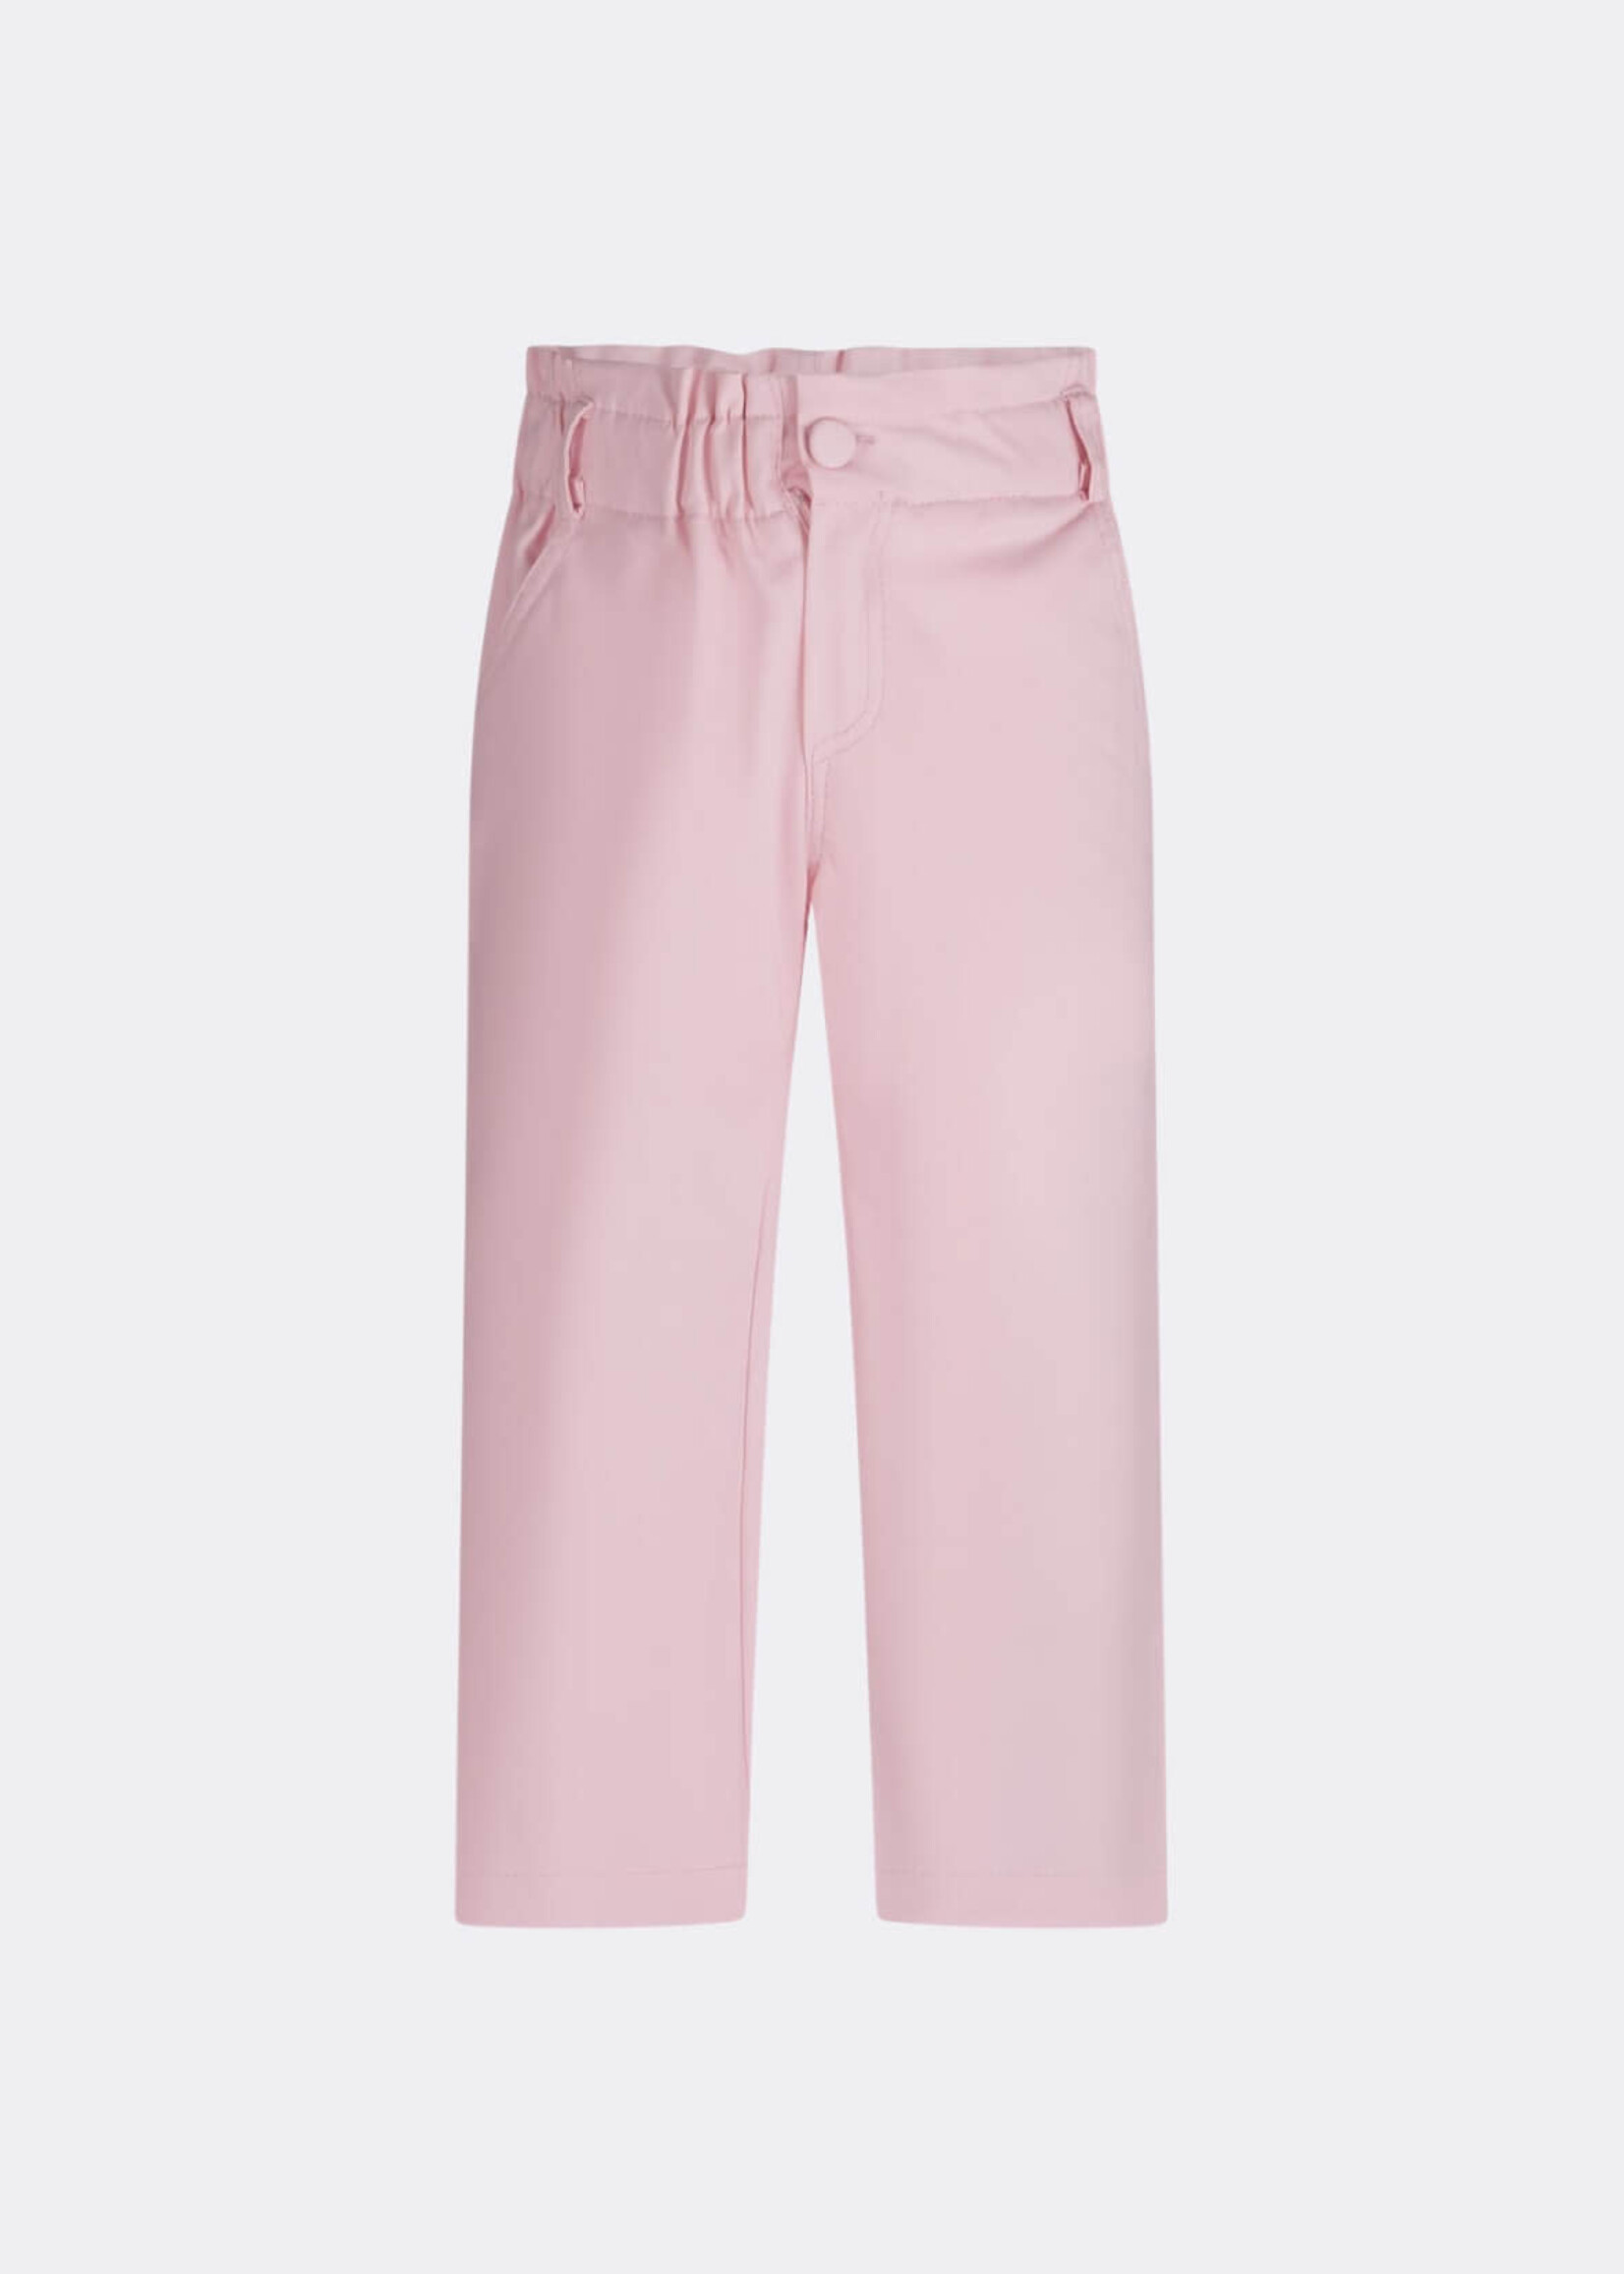 Fun & Fun Pink Trousers